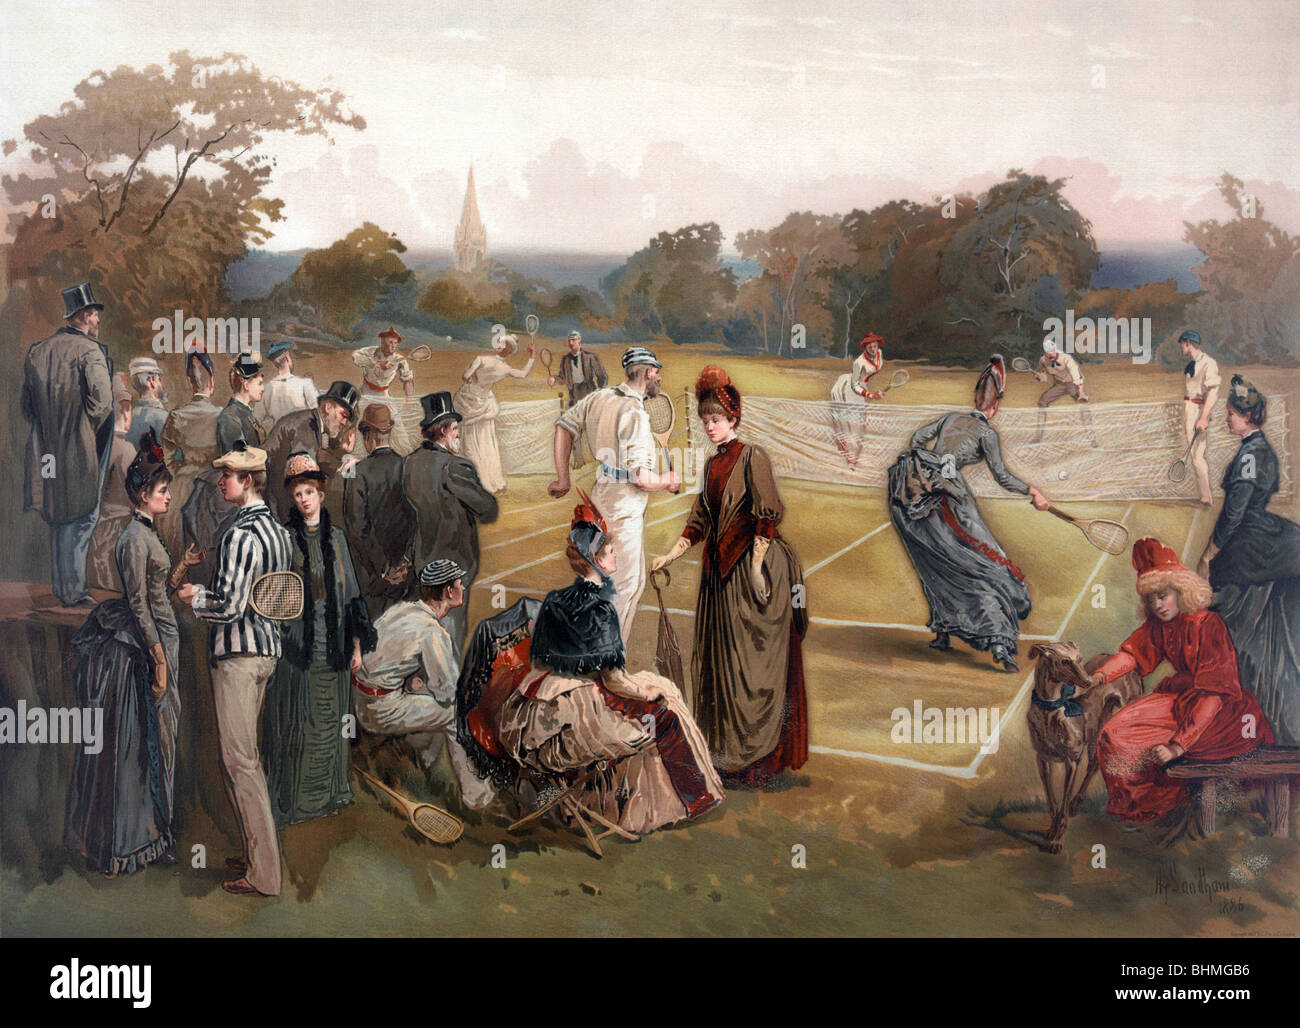 Couleur Vintage print c1887 représentant un début de match de tennis sur gazon dans les États-Unis d'Amérique. Banque D'Images